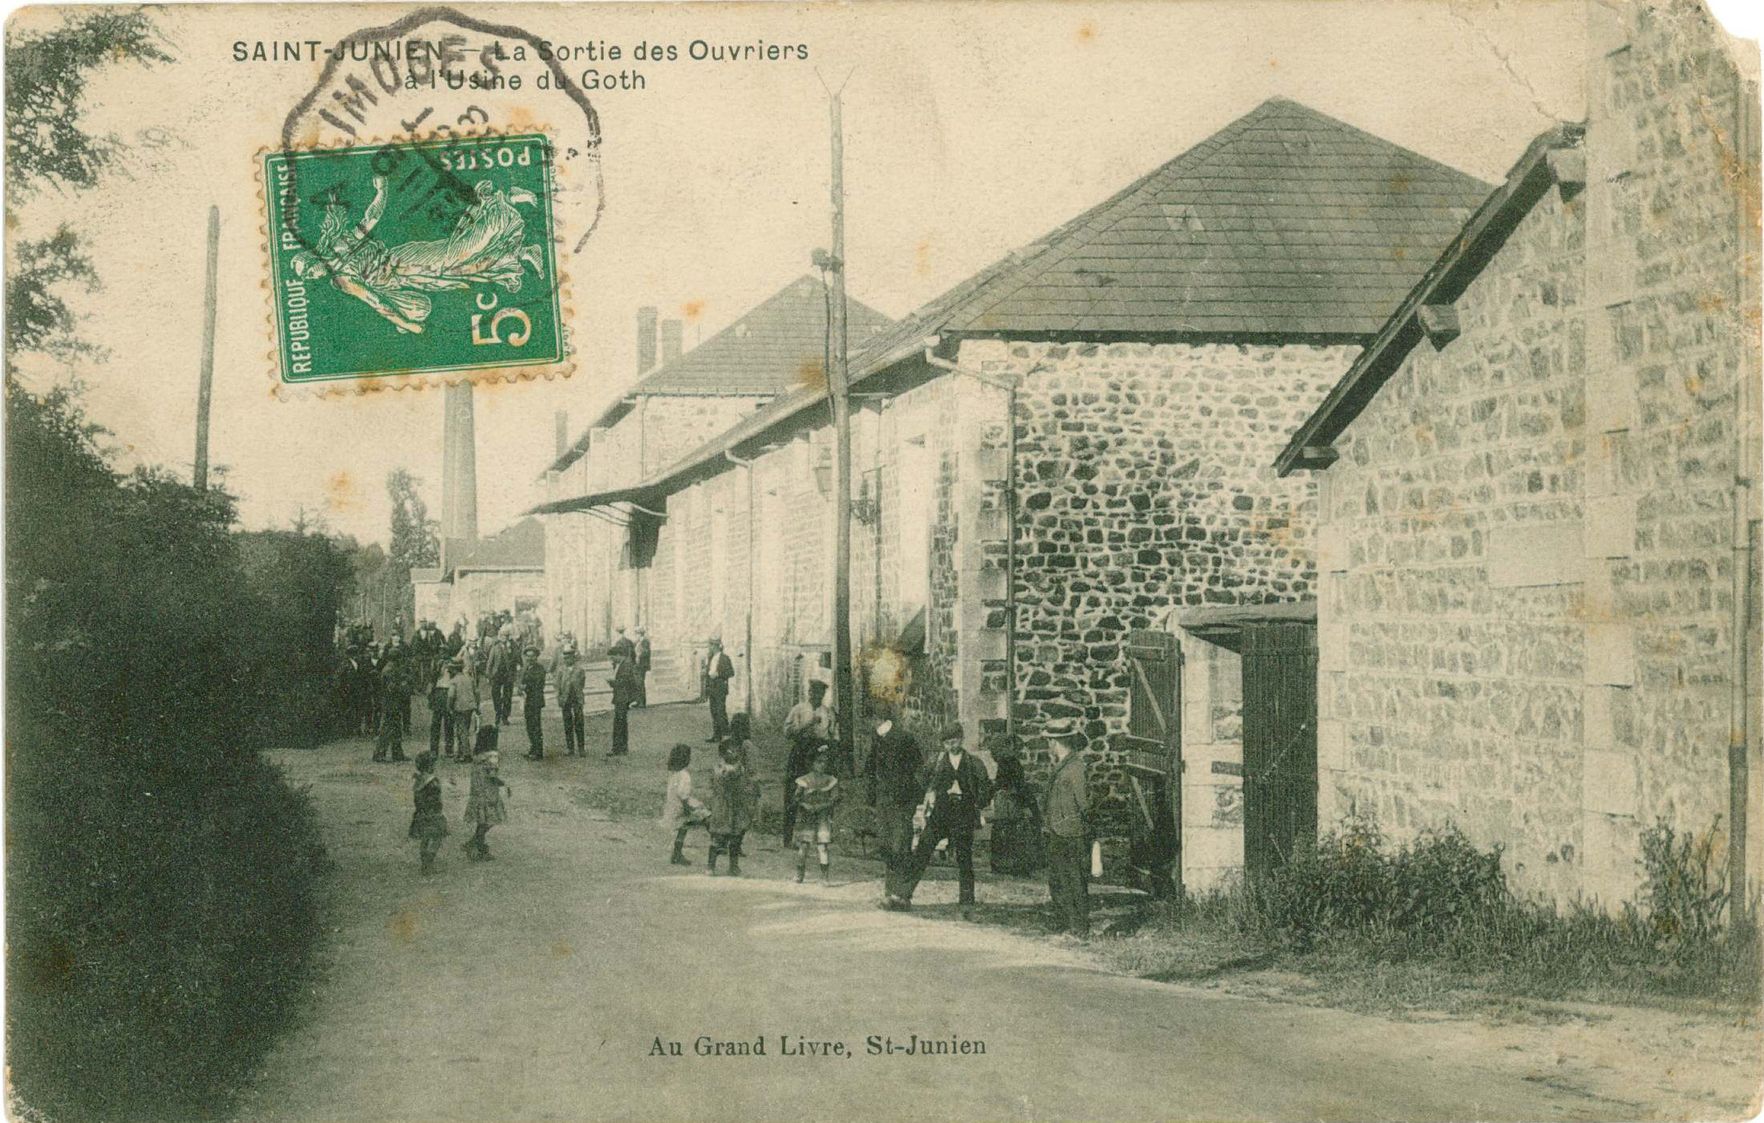 Sortie des ouvriers de l'usine du Goth vers 1910. Carte postale au Grand Livre.